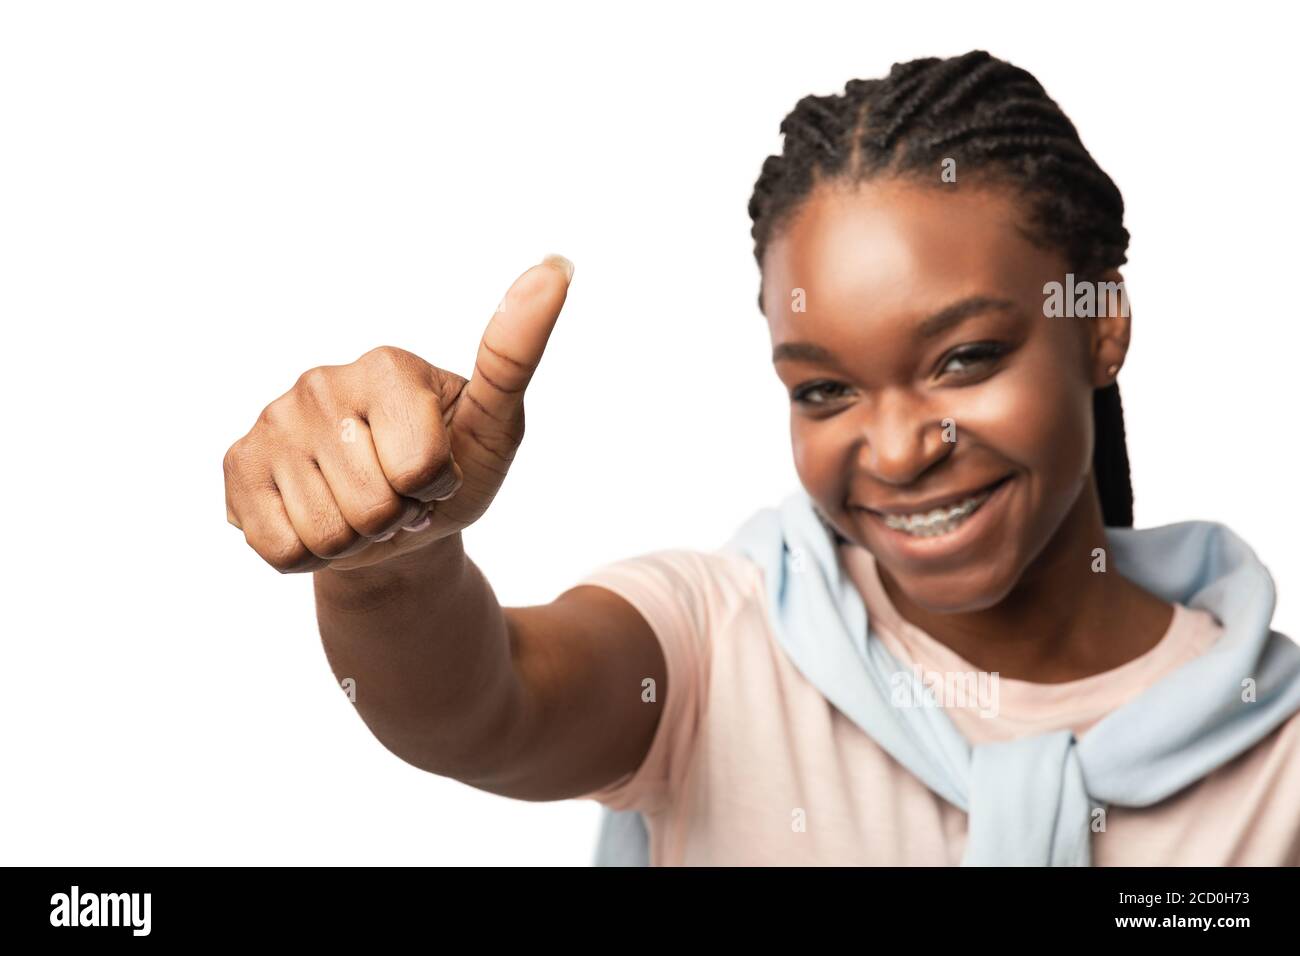 Chica del Milenio Africana gestuando Thumbs Arriba posando sobre fondo blanco Foto de stock